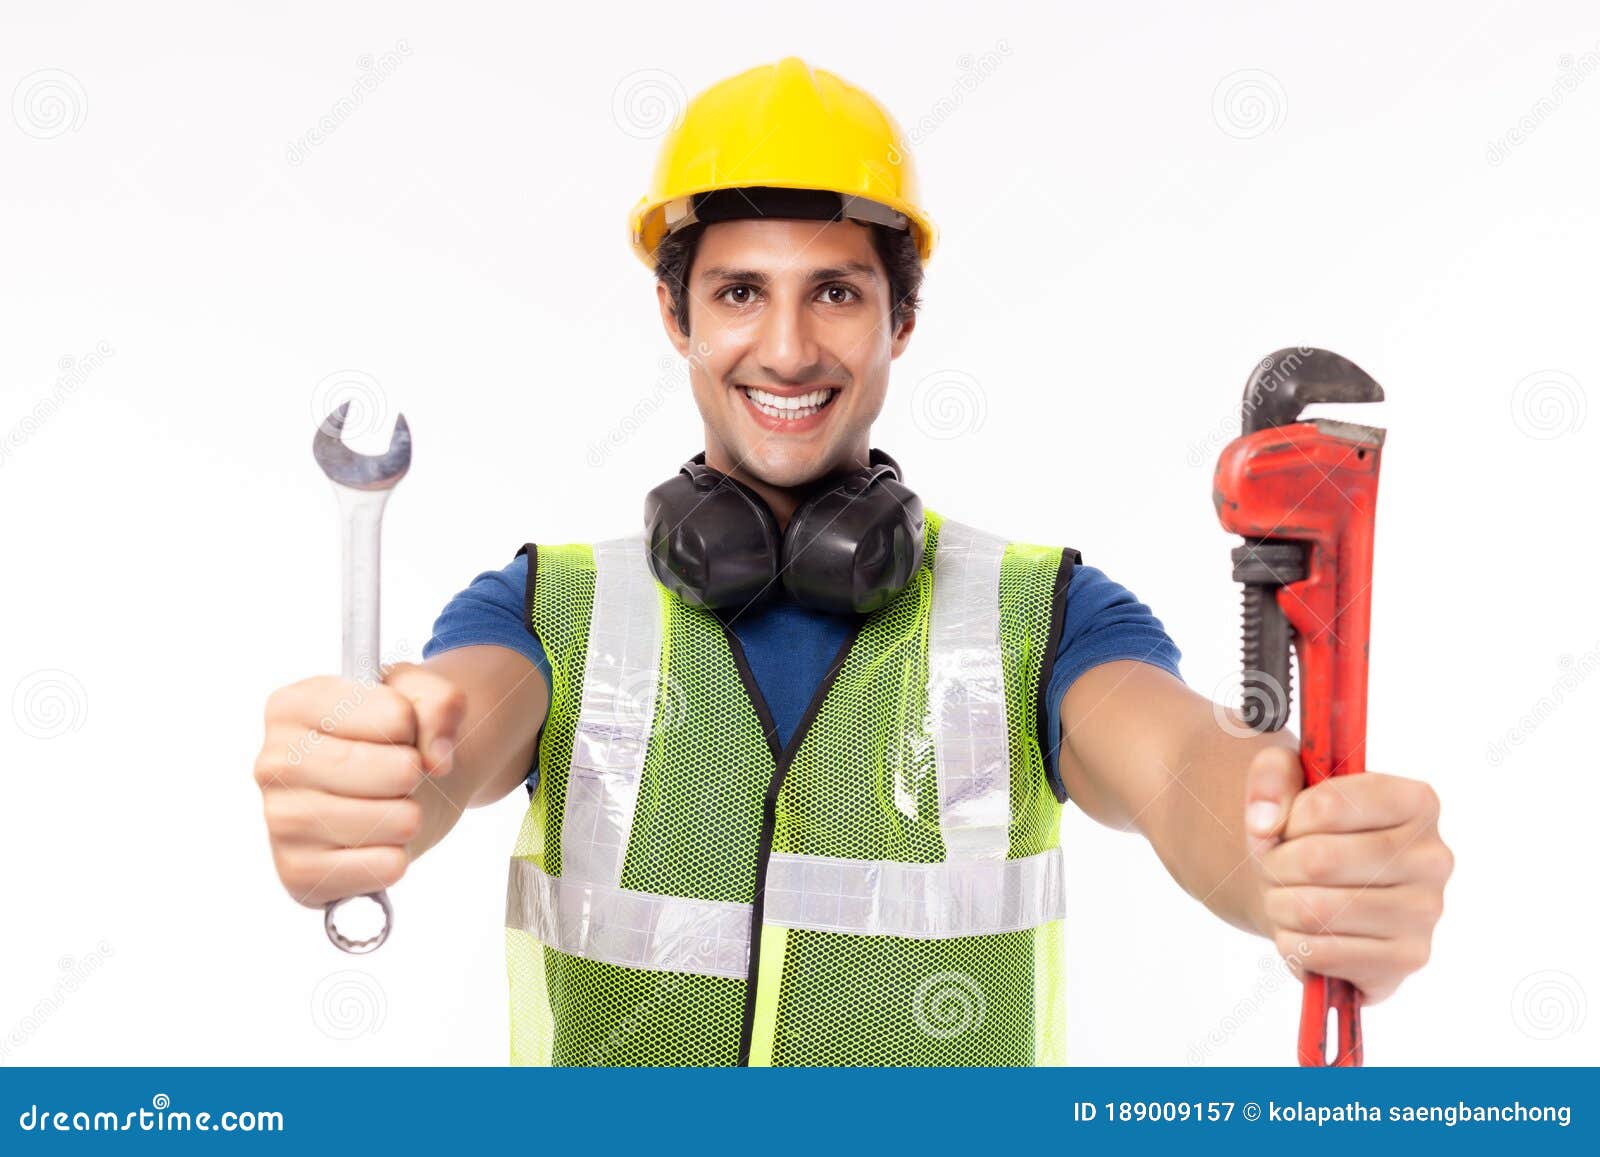 Imágenes de obreros trabajando